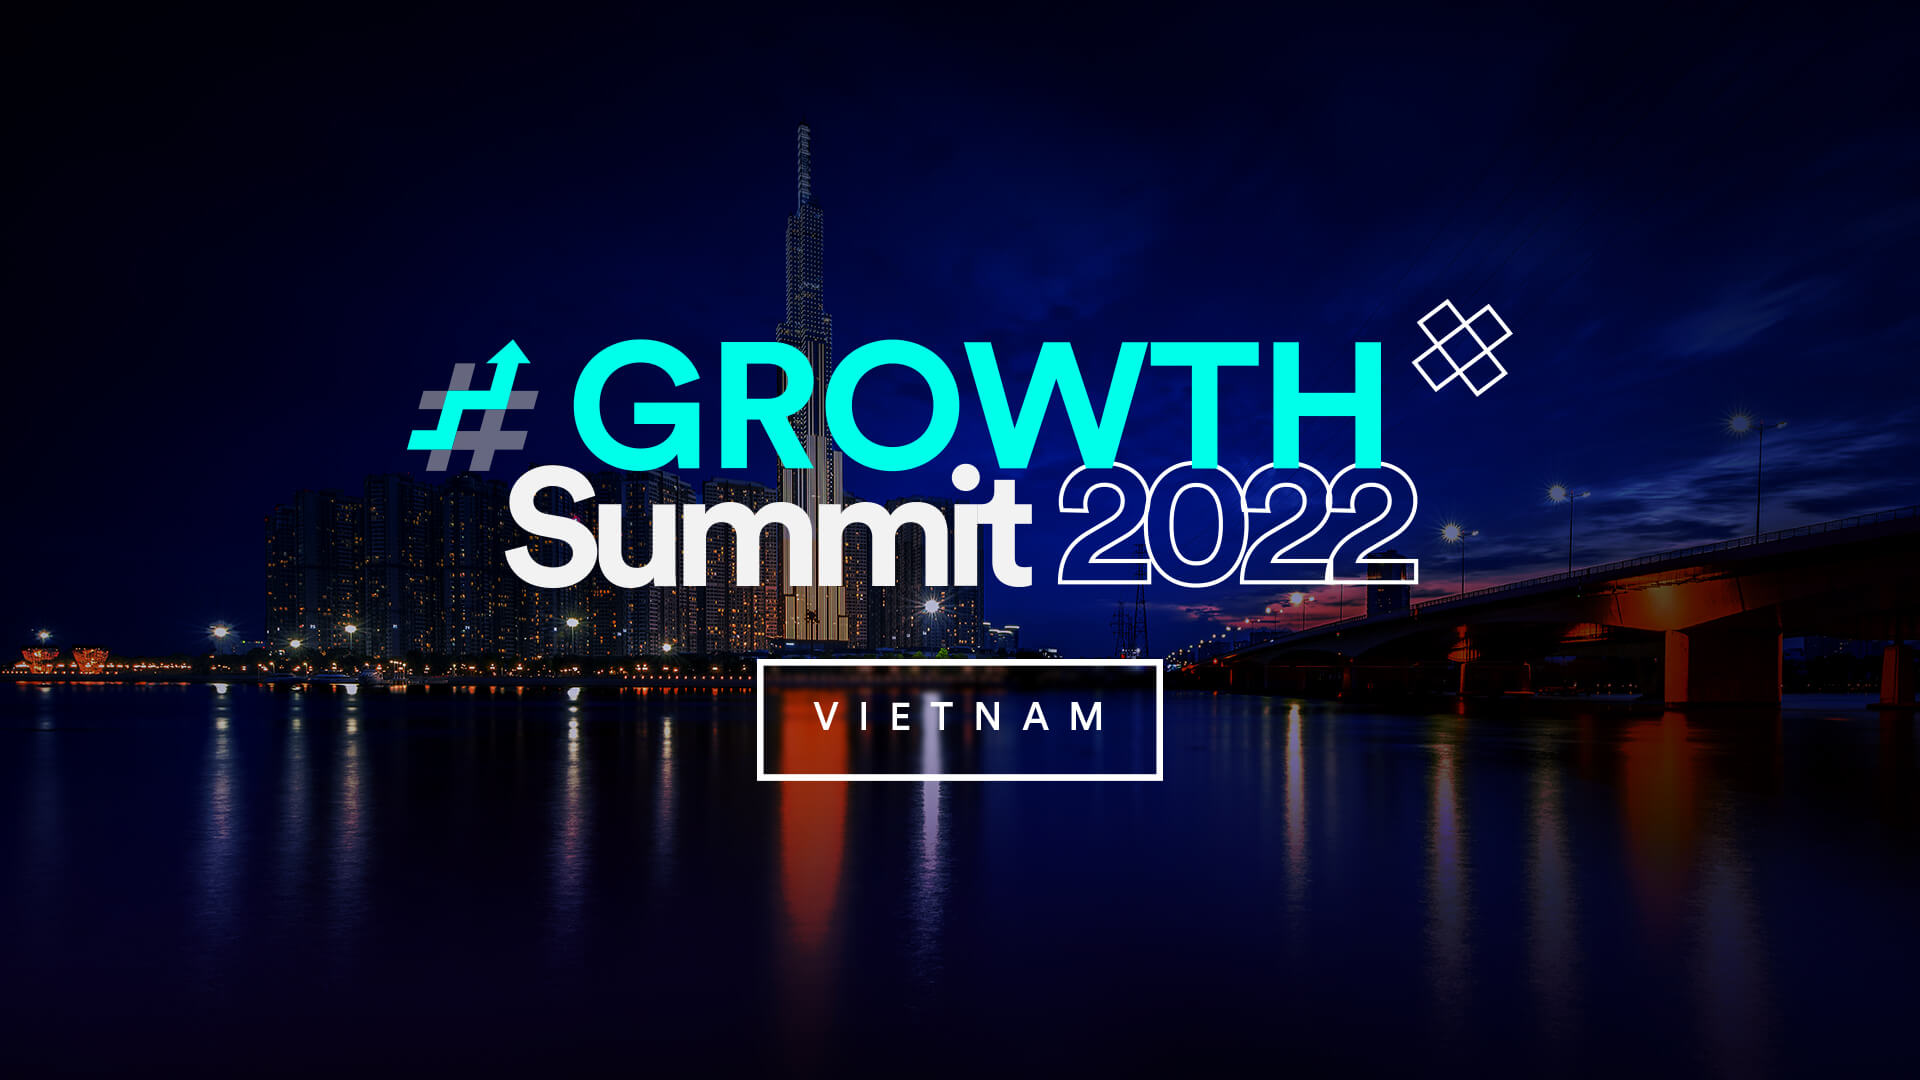 #GROWTH Summit 2022 Vietnam